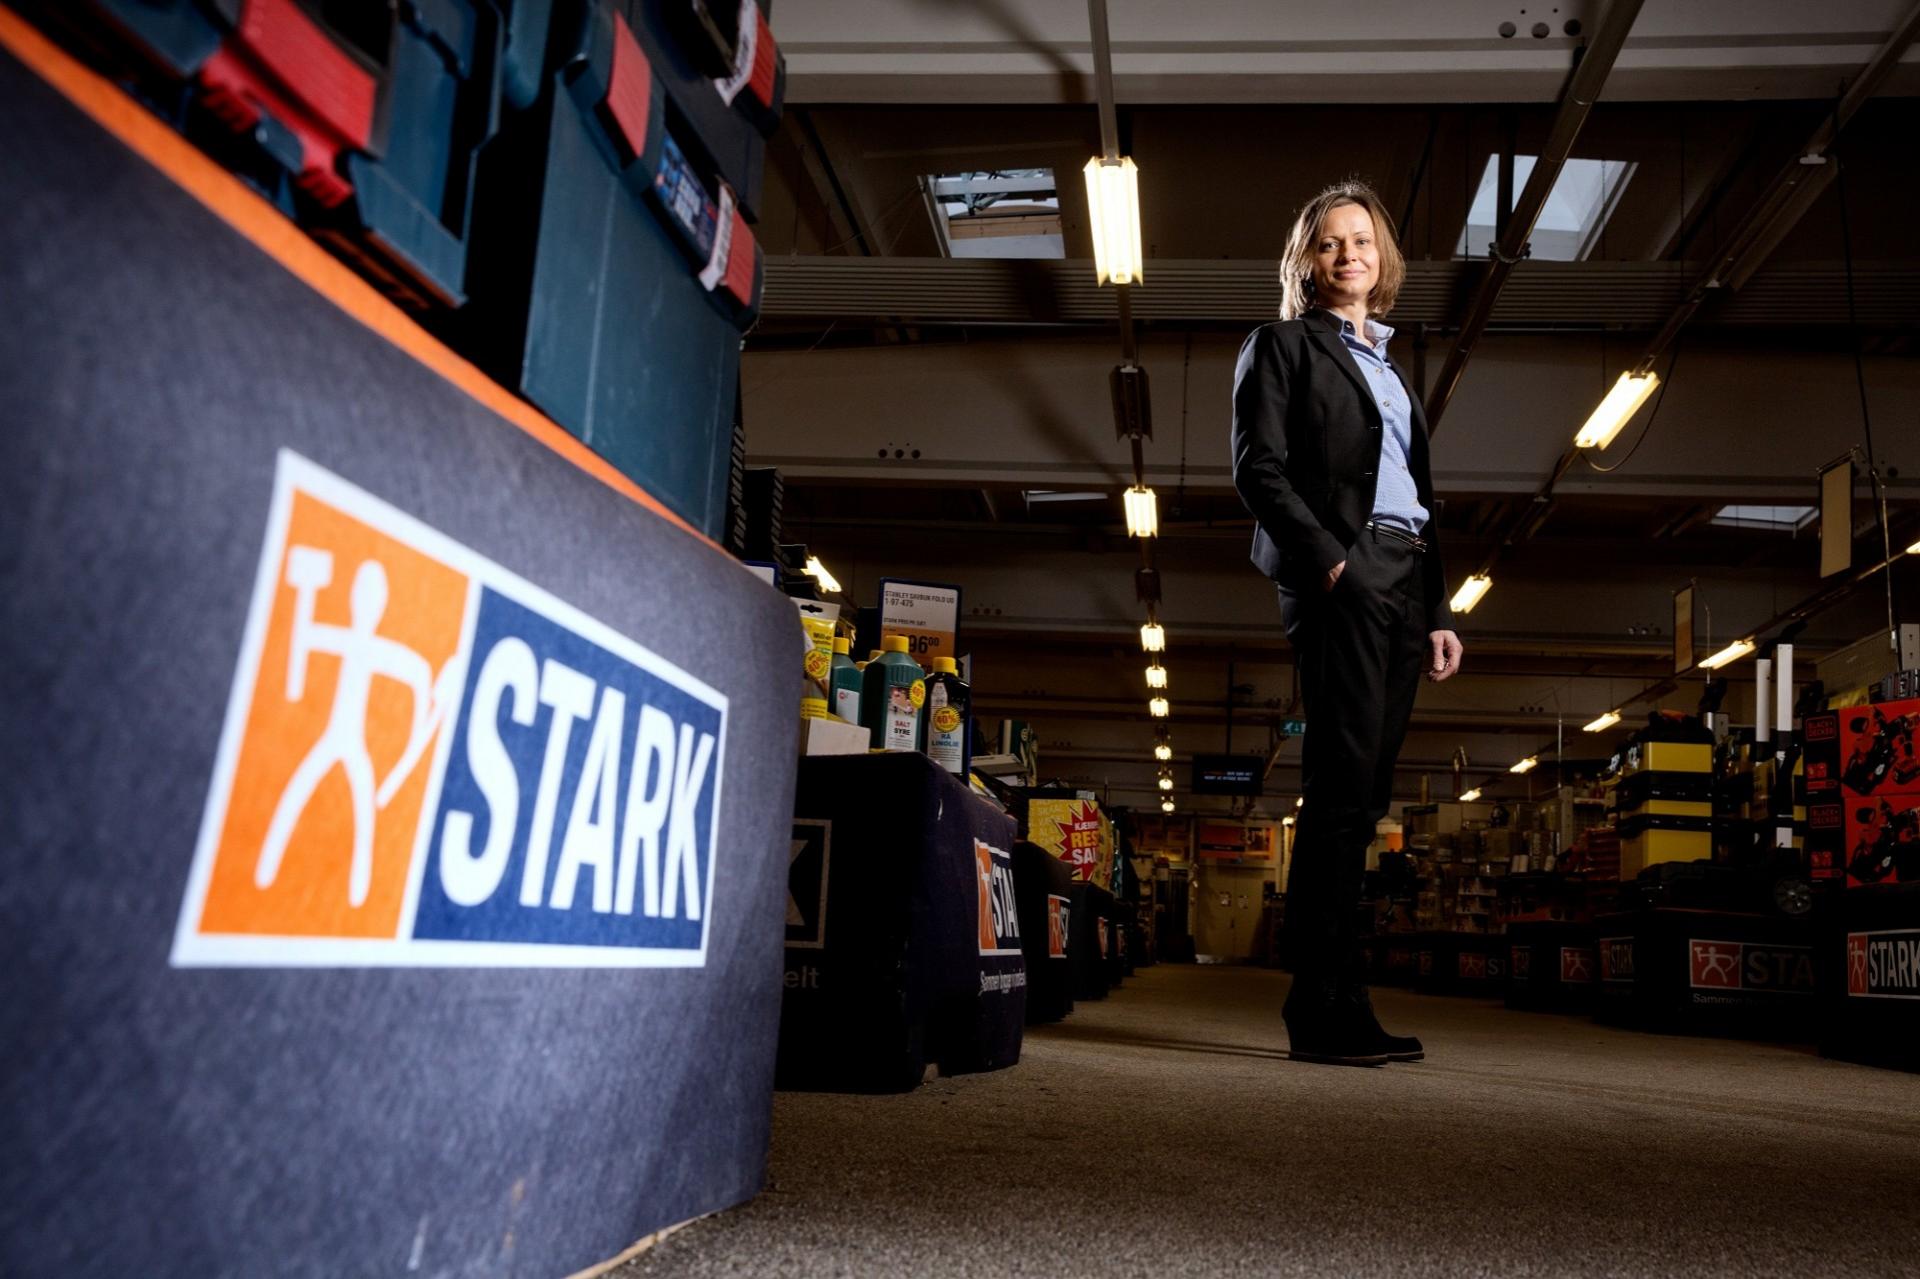 Den nye direktør kender Stark indgående, idet hun siden 2016 har været fungerende CEO. Foto: Balleby.com.